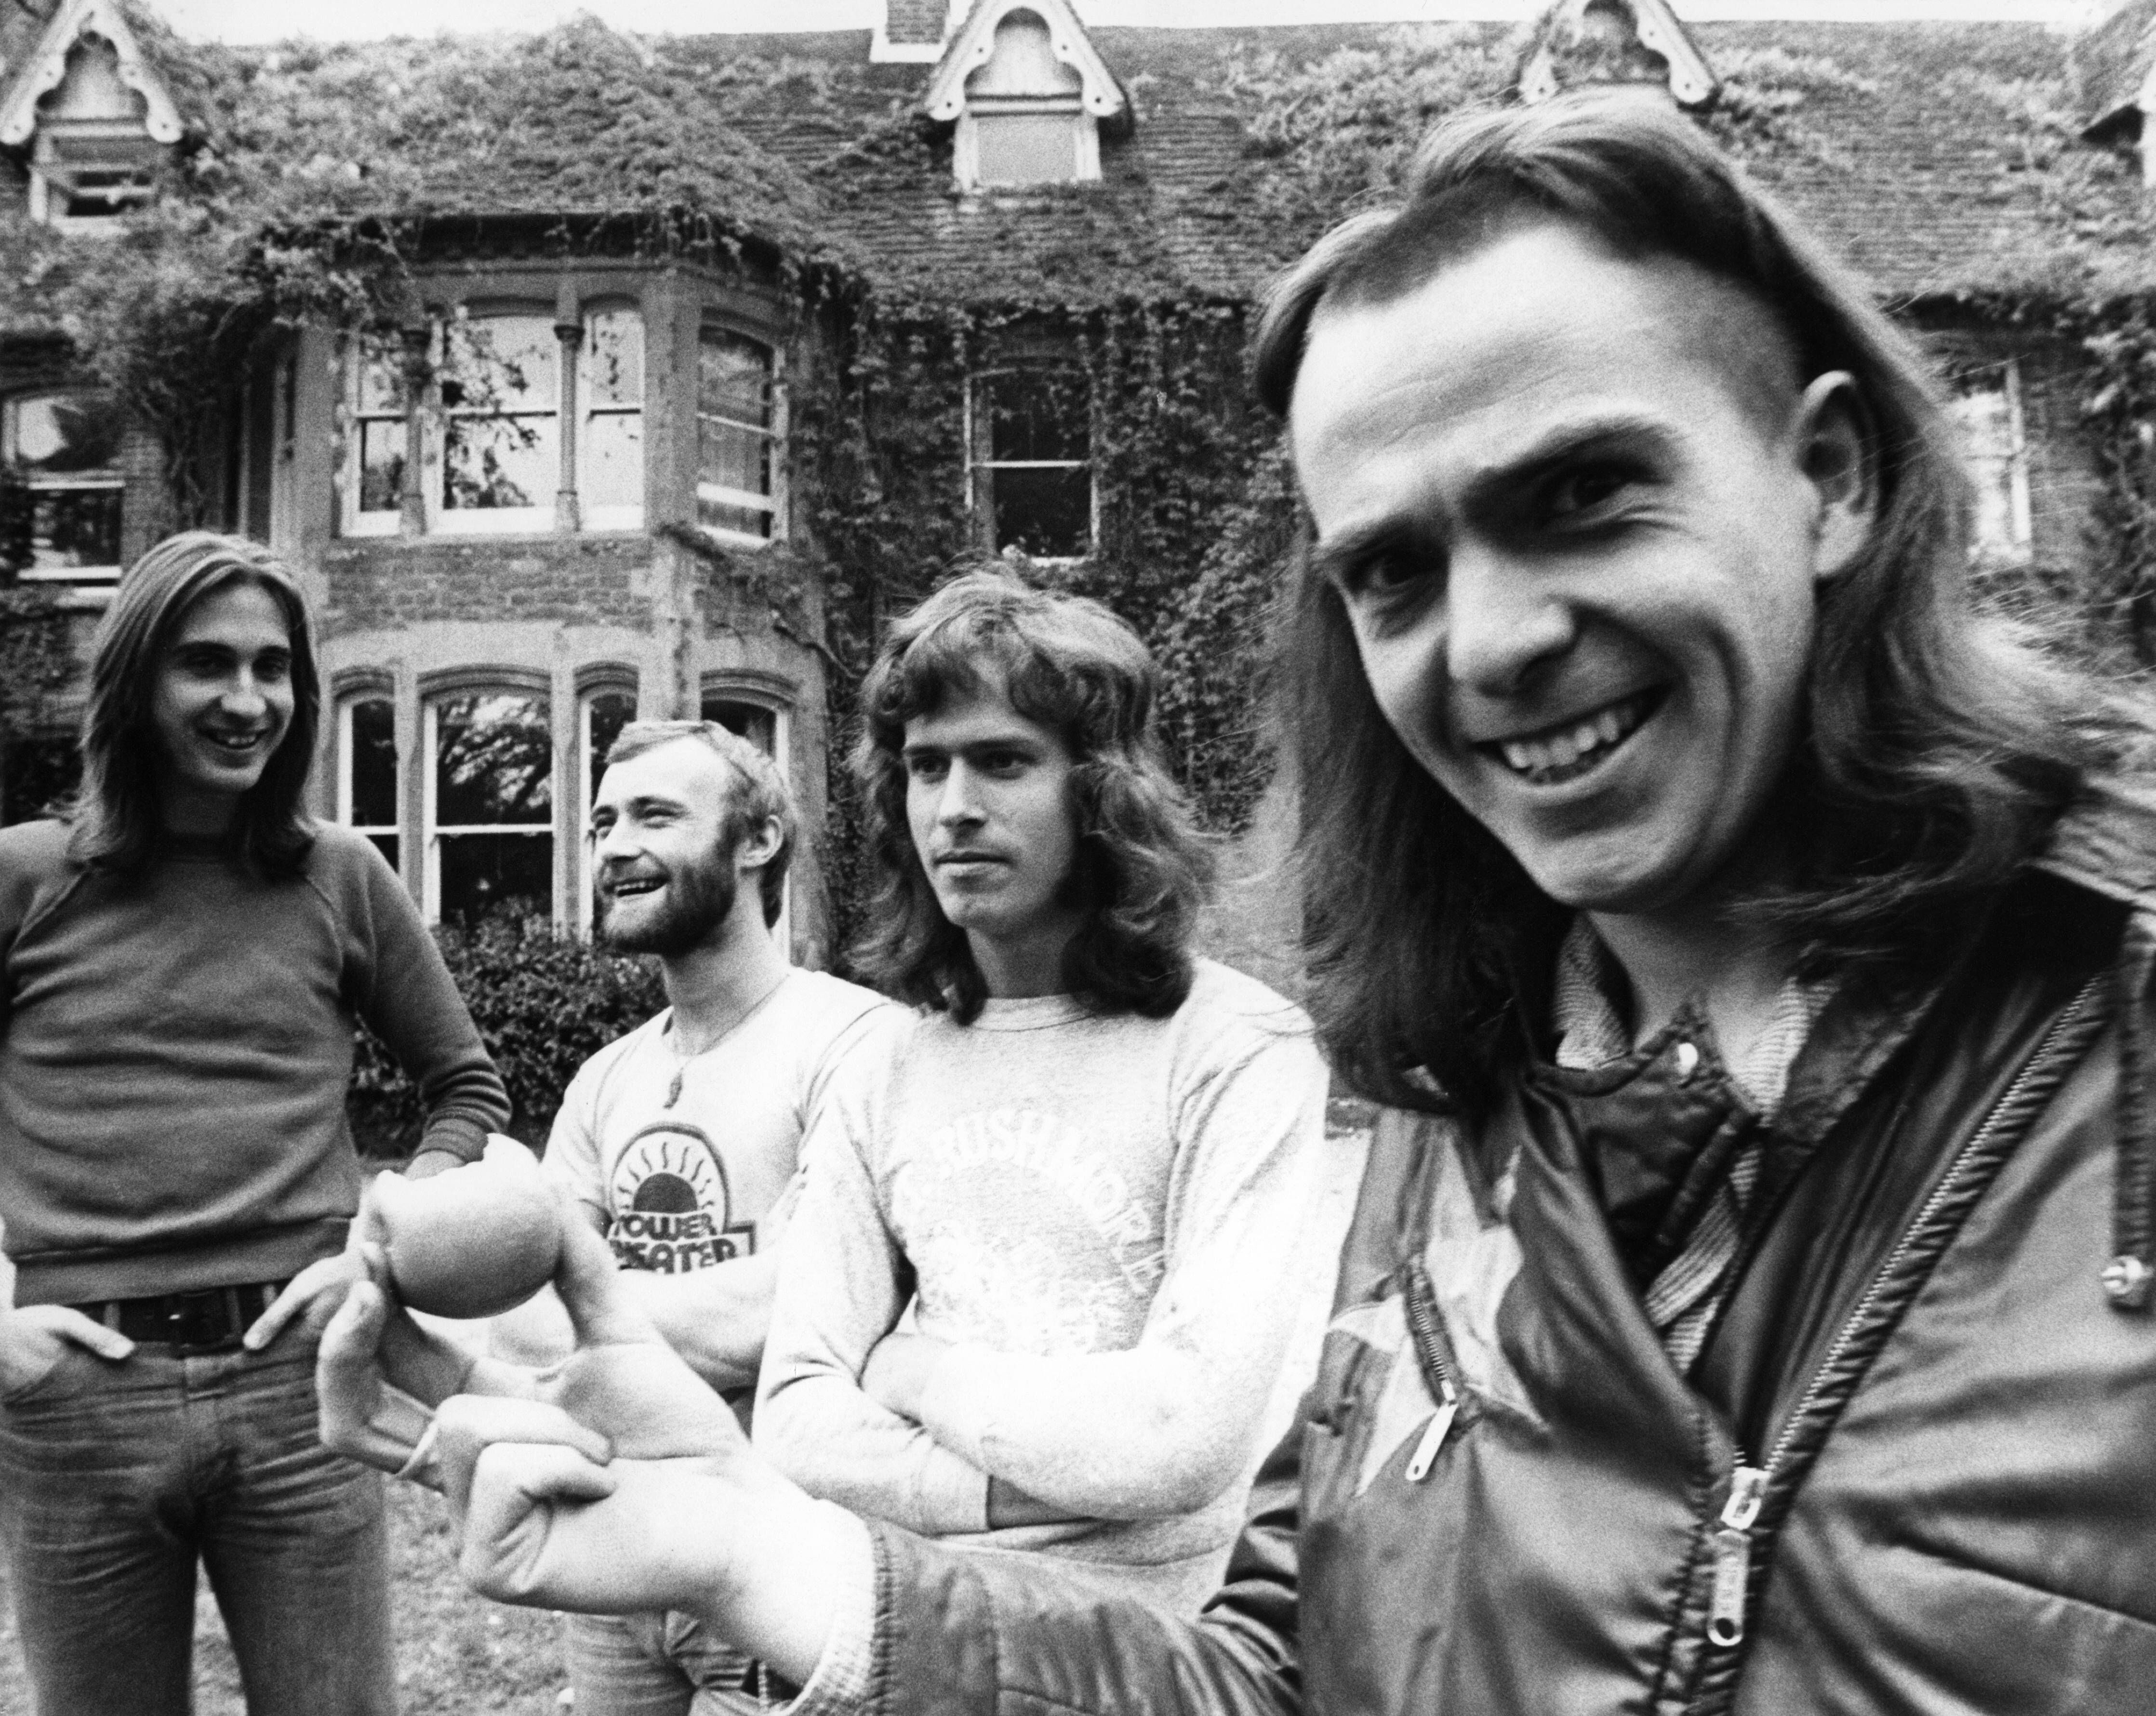 Genesis en 1974 en Headley Grange, donde ensayaron las canciones de 'The Lamb Lies Down on Broadway'. De izquierda a derecha, Mike Rutherford, Phil Collins, Tony Banks y Peter Gabriel, con una fruta en la mano. 